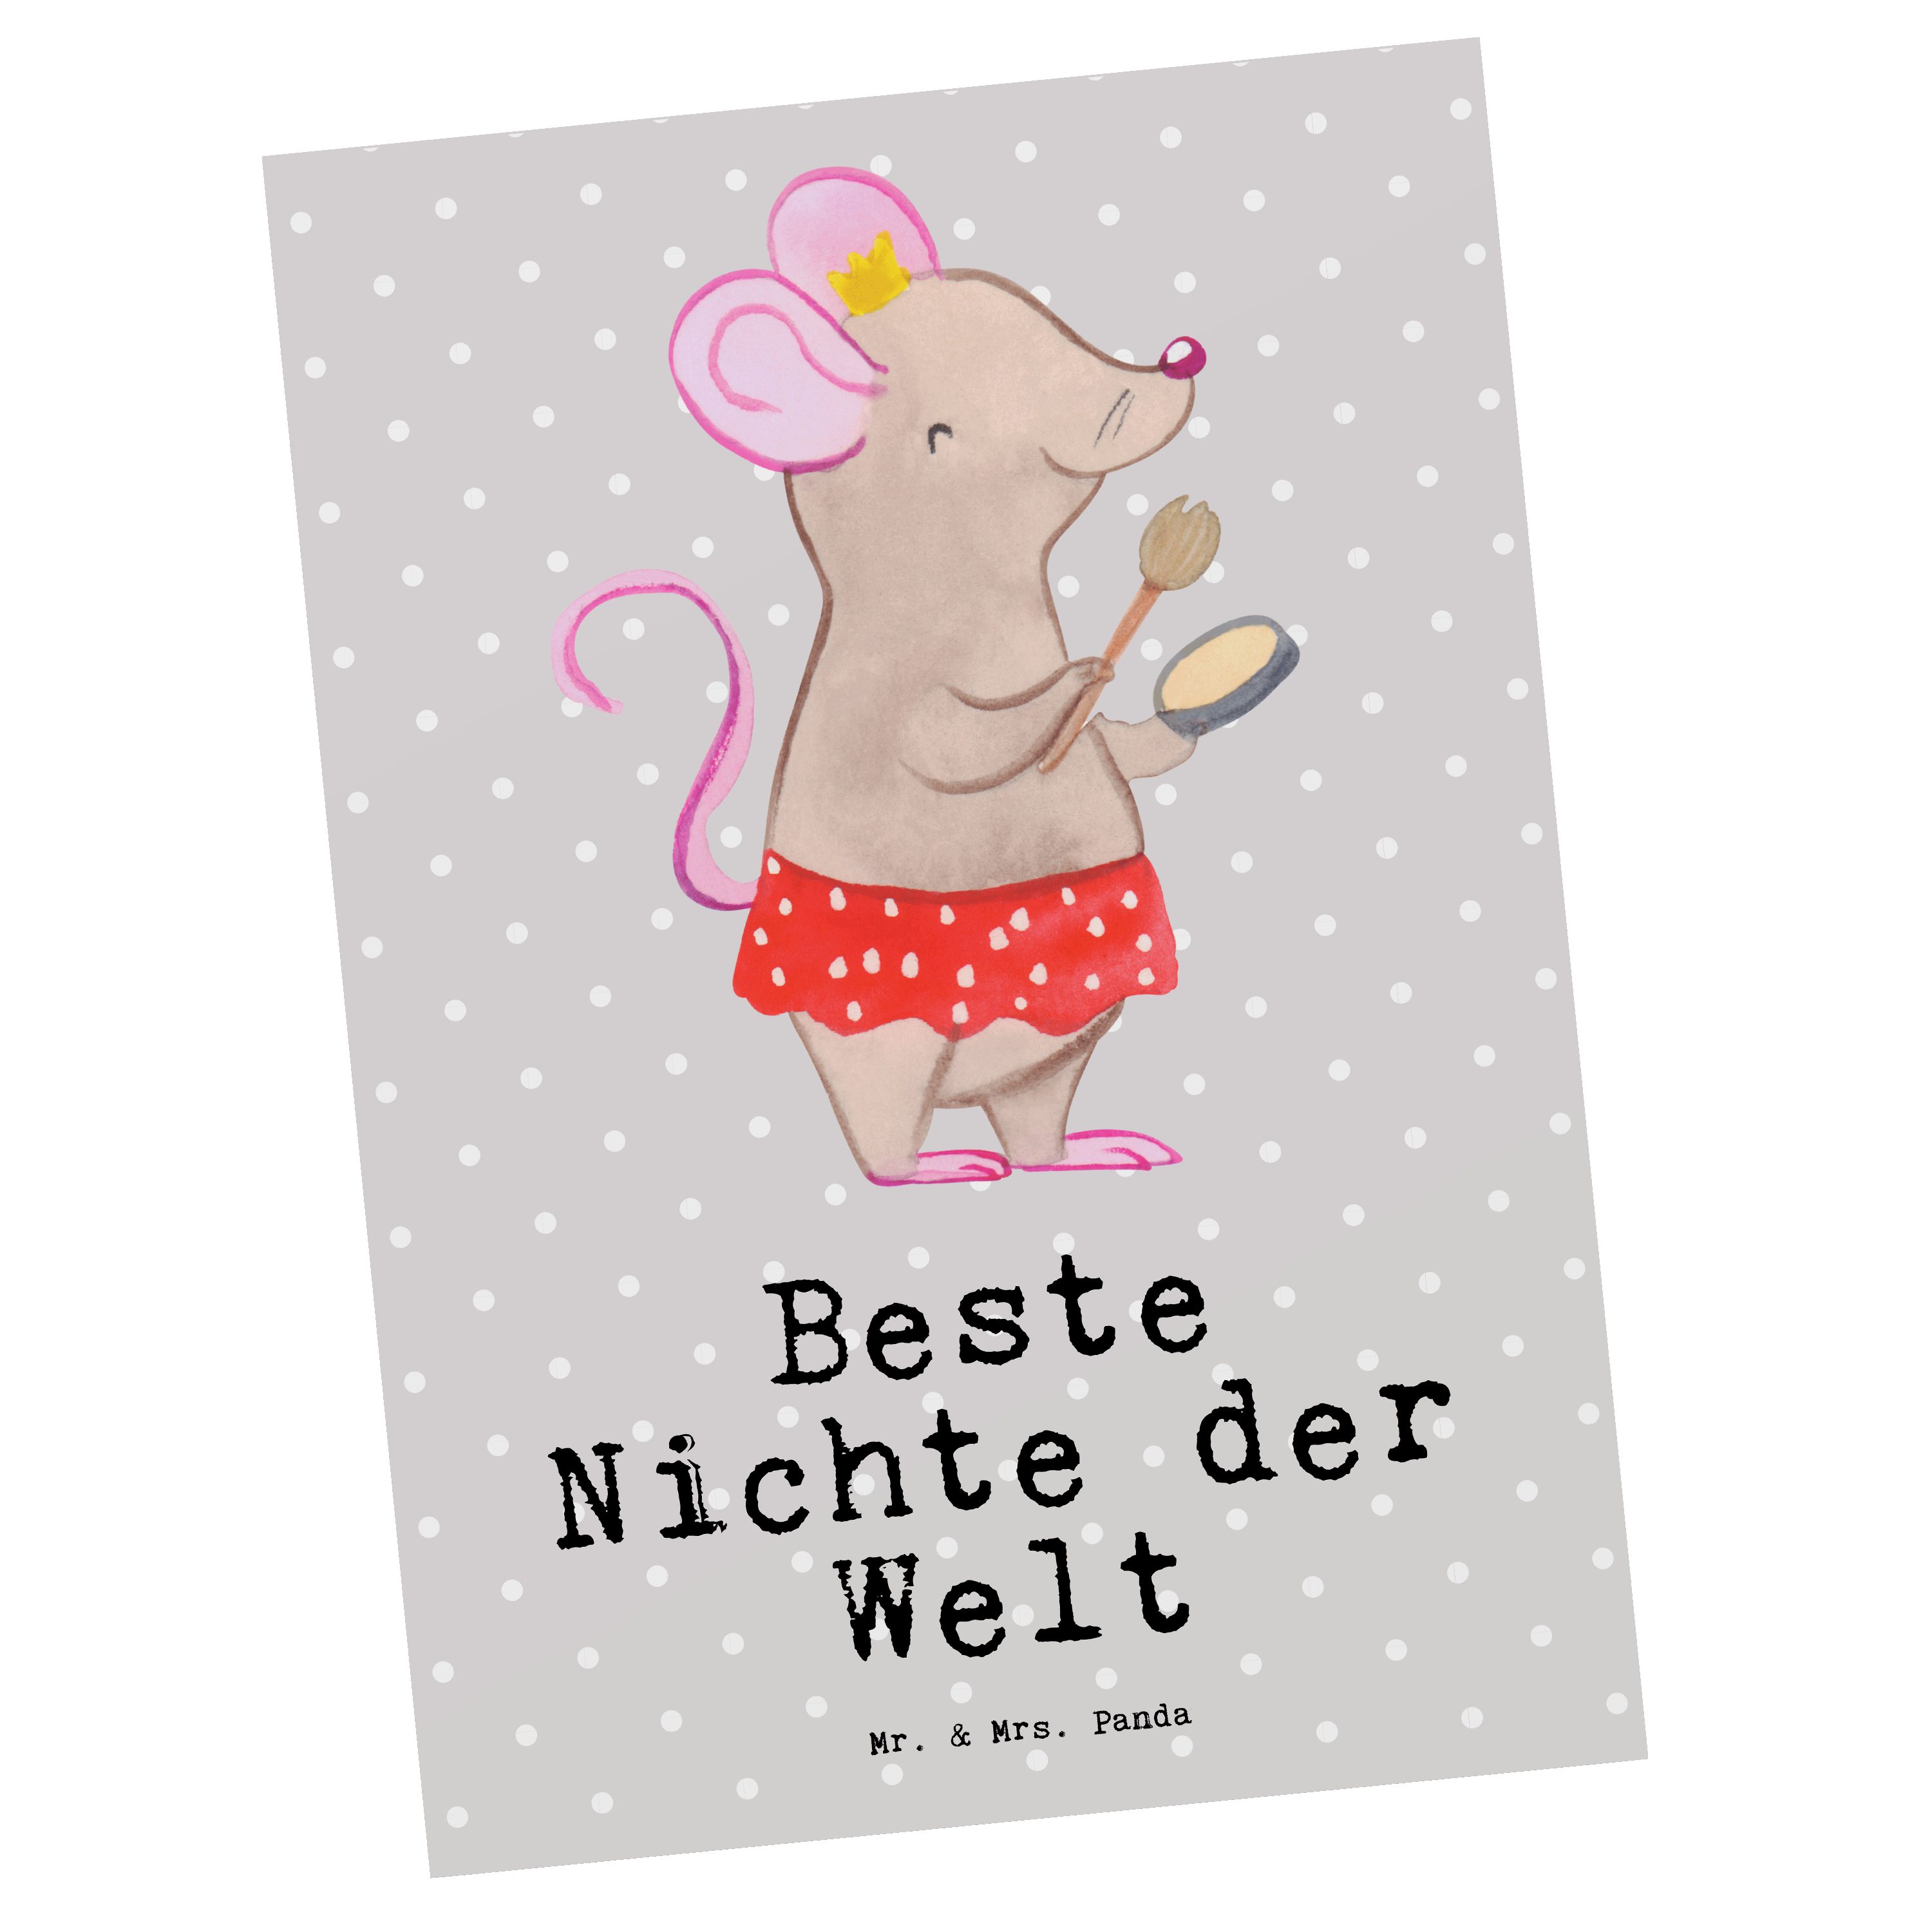 der - Beste Grau Geschenk, Sch Nichte Postkarte Panda Mr. & - Mrs. Tochter Welt der Pastell Maus